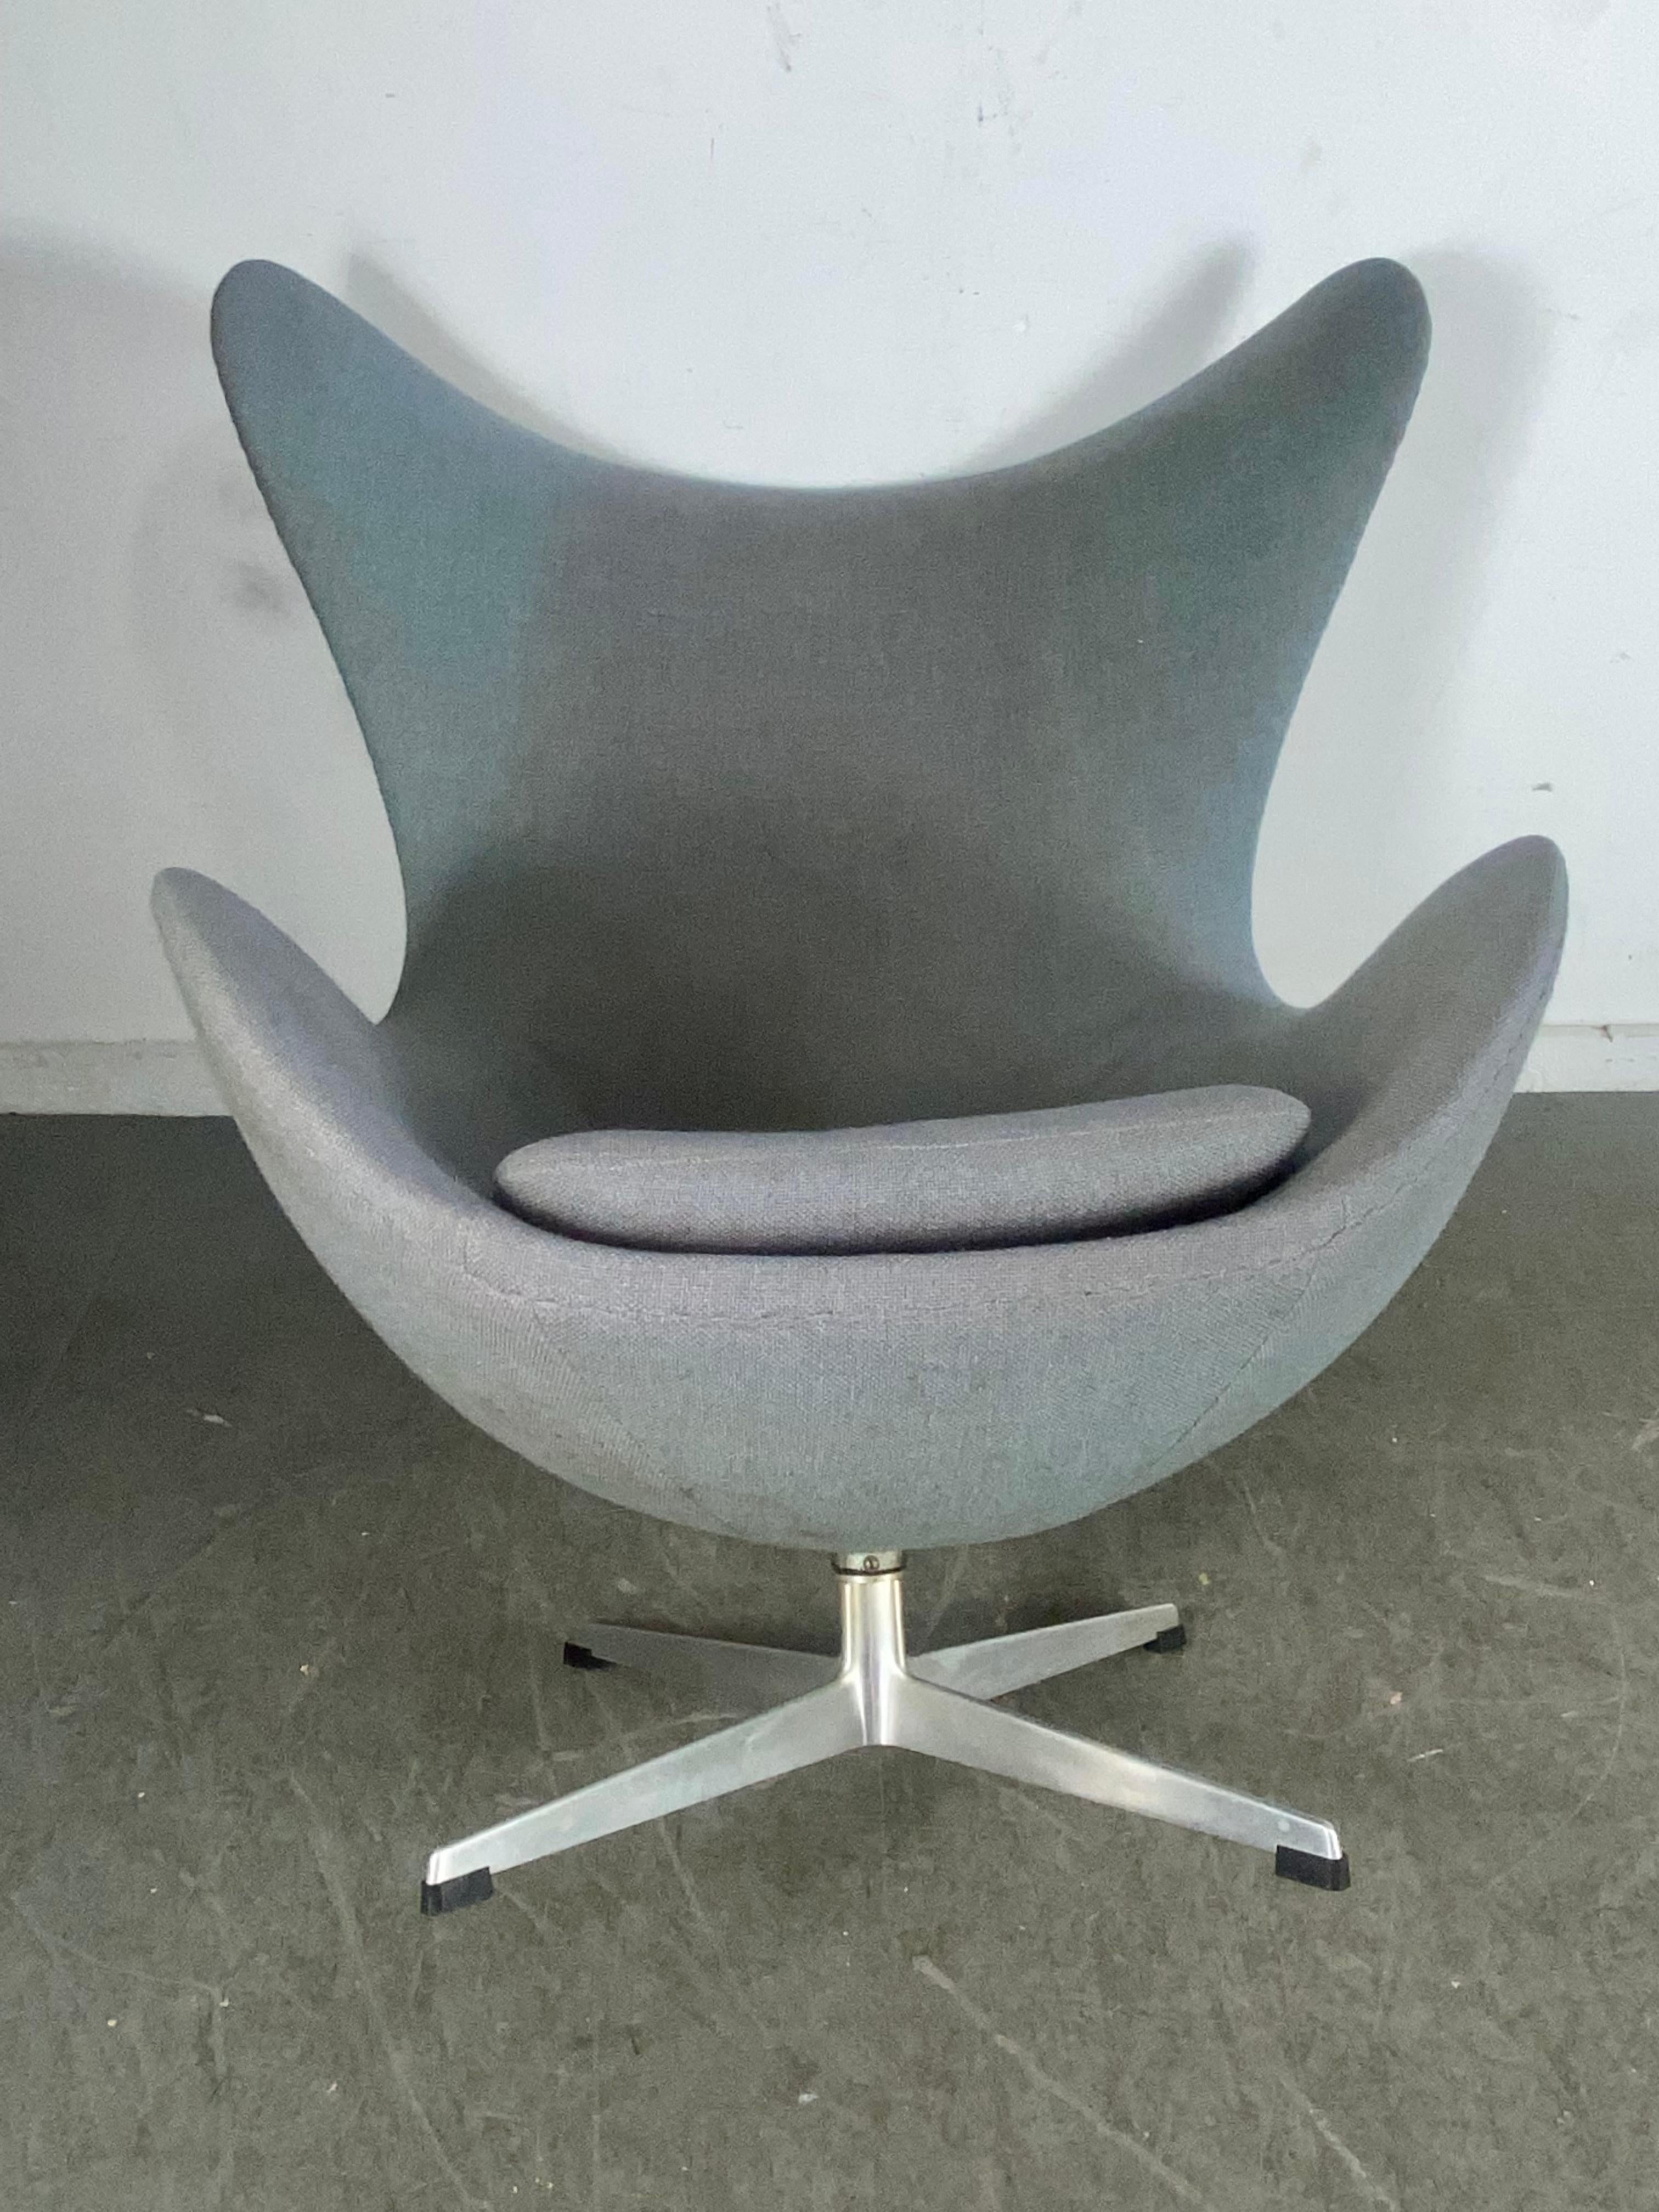 Classic 1960s  Egg Chair designed by Arne Jacobsen for Fritzhansen / Denmark 2